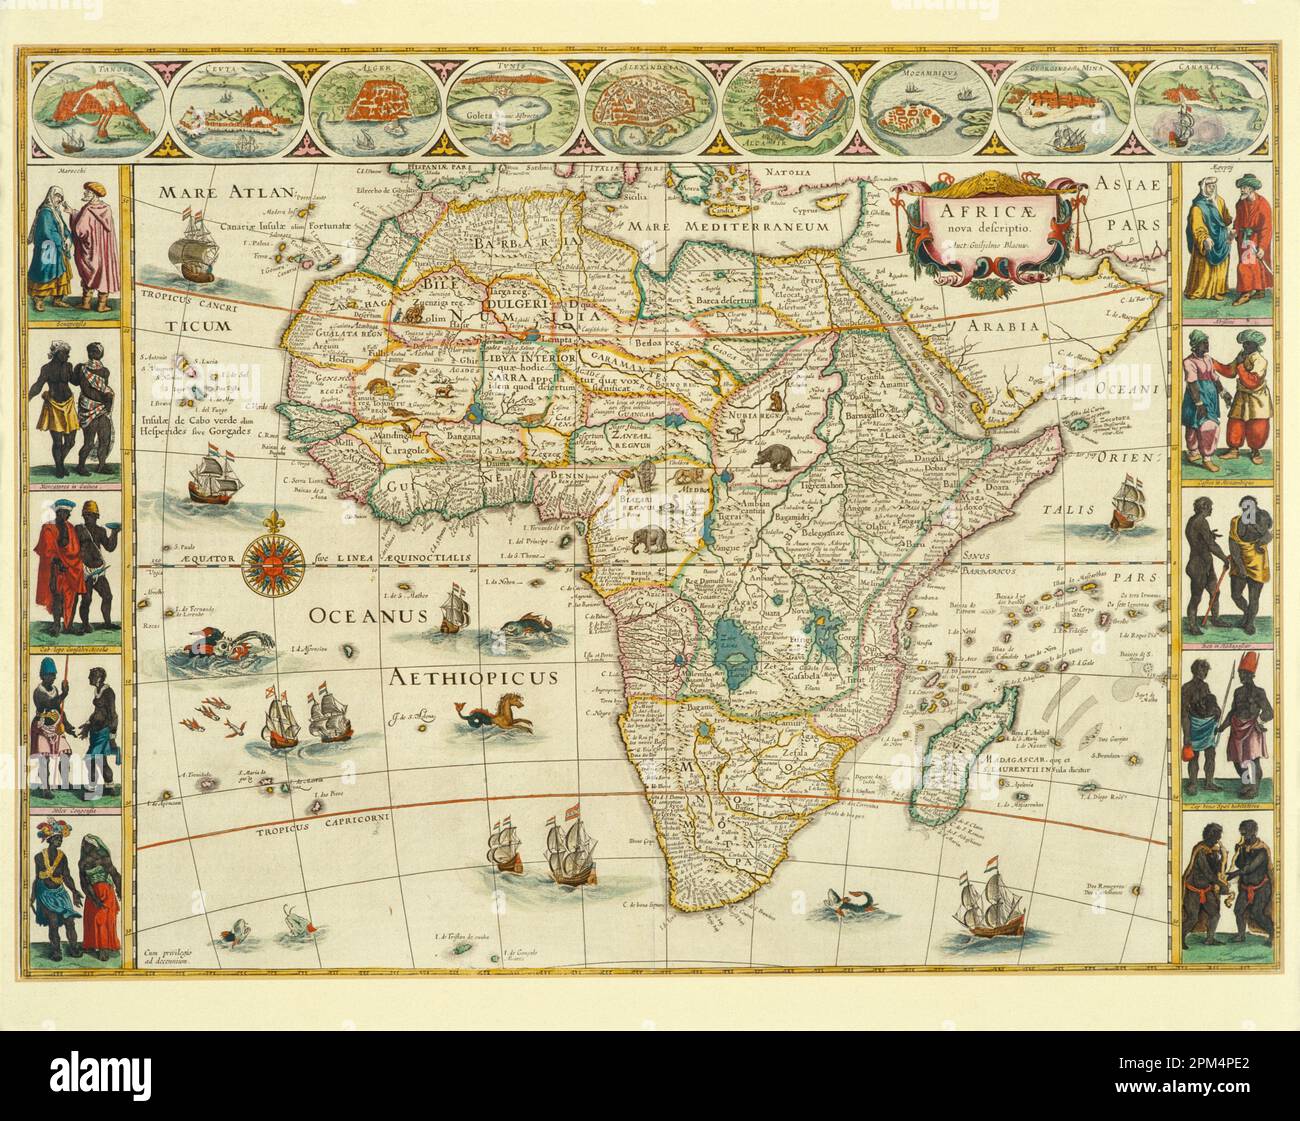 Kunstwerke. Historische, antike illustrierte Karte mit dem afrikanischen Kontinent. Von Willem Janszoon Blaeu. Ungefähr 1635. Stockfoto